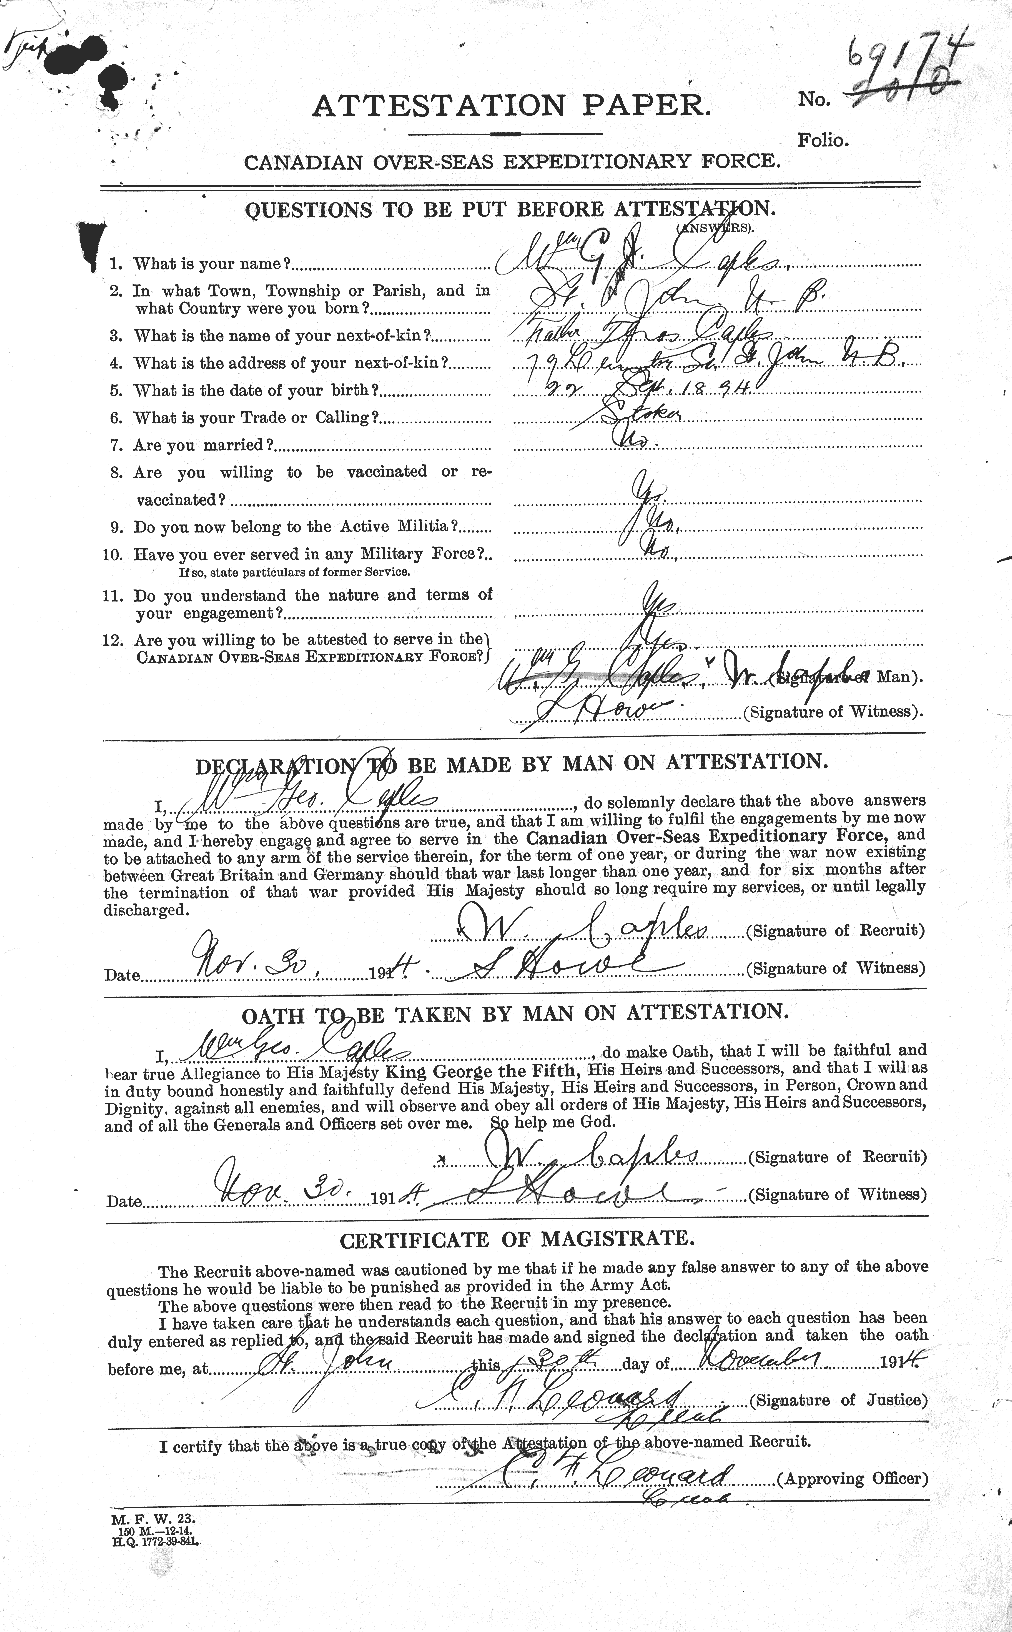 Dossiers du Personnel de la Première Guerre mondiale - CEC 692557a